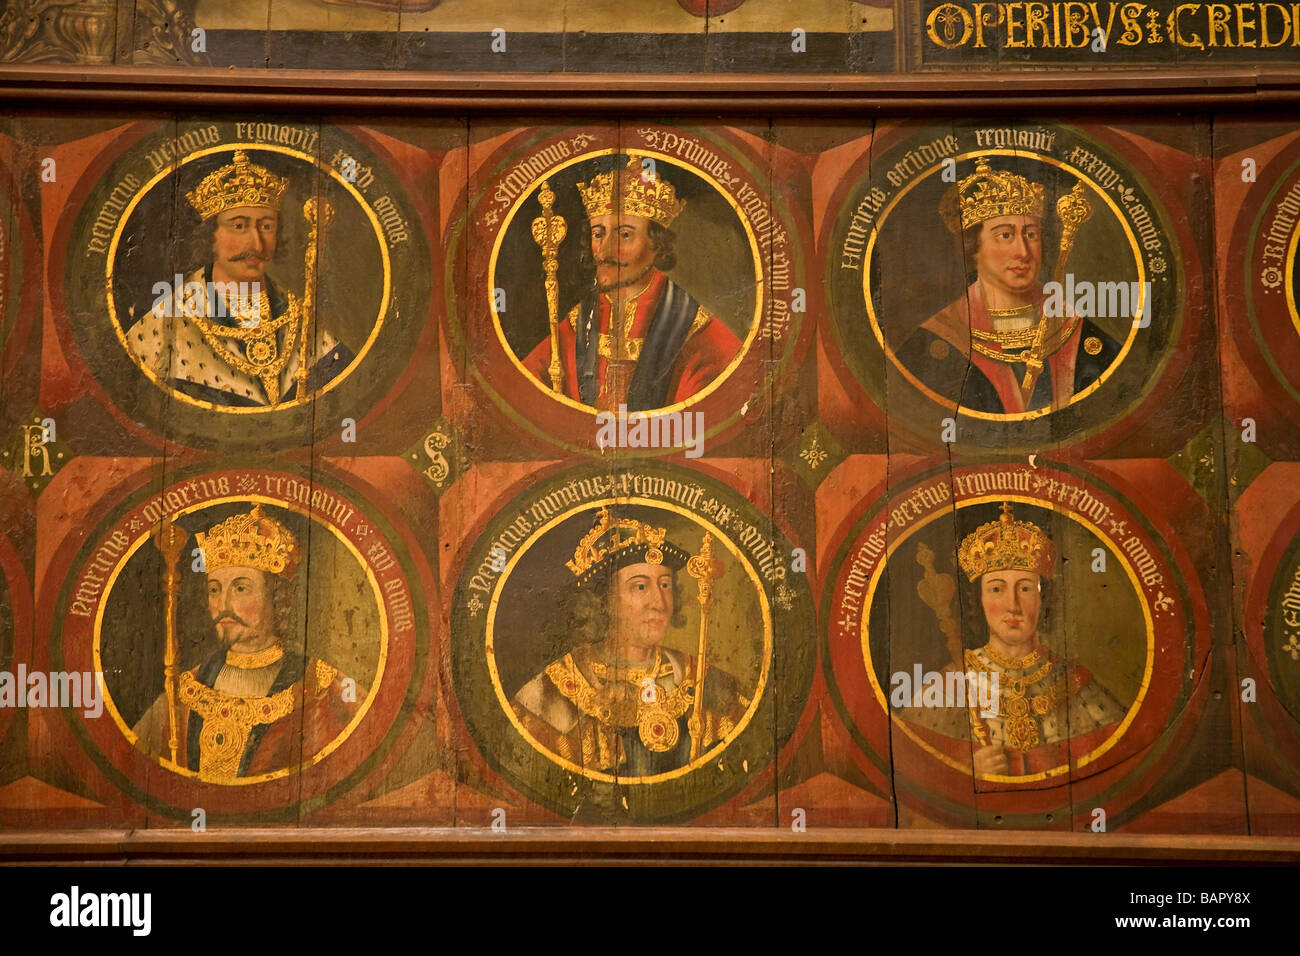 Série de portraits de Rois Anglais peint sur panneaux de bois par Lambert Barnard. Transept sud de la cathédrale de Chichester, Sussex, UK Banque D'Images